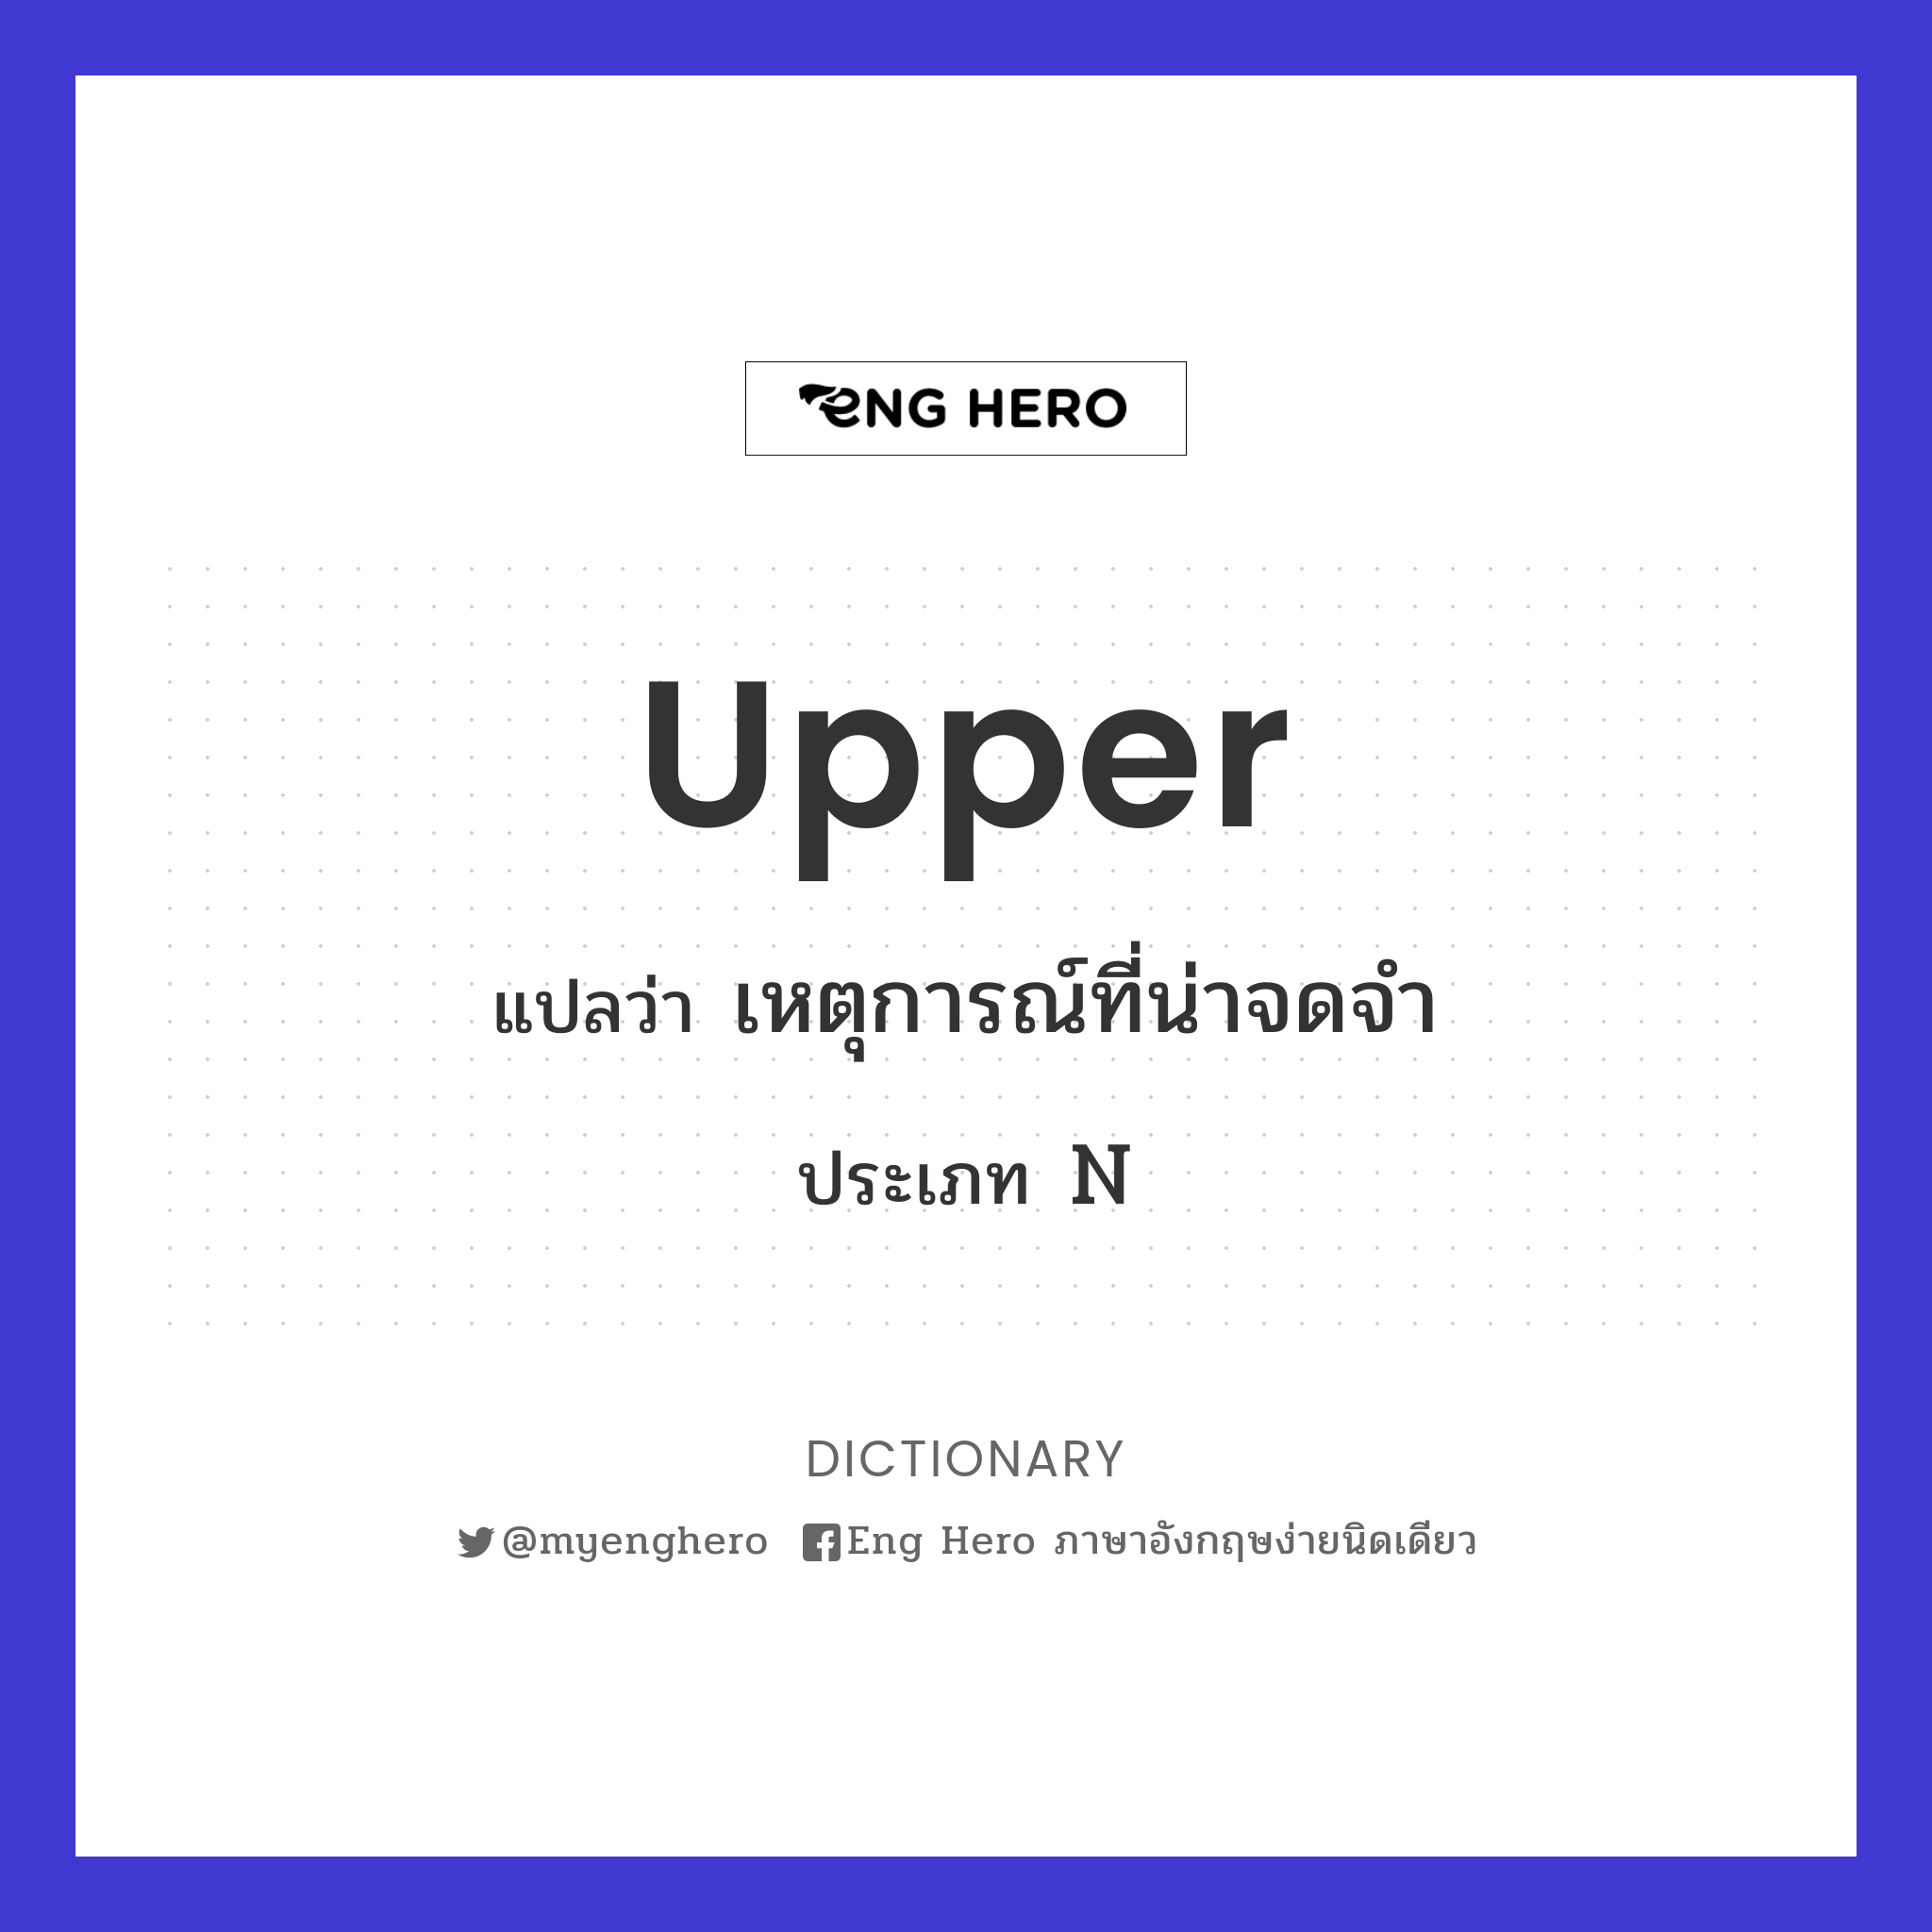 upper